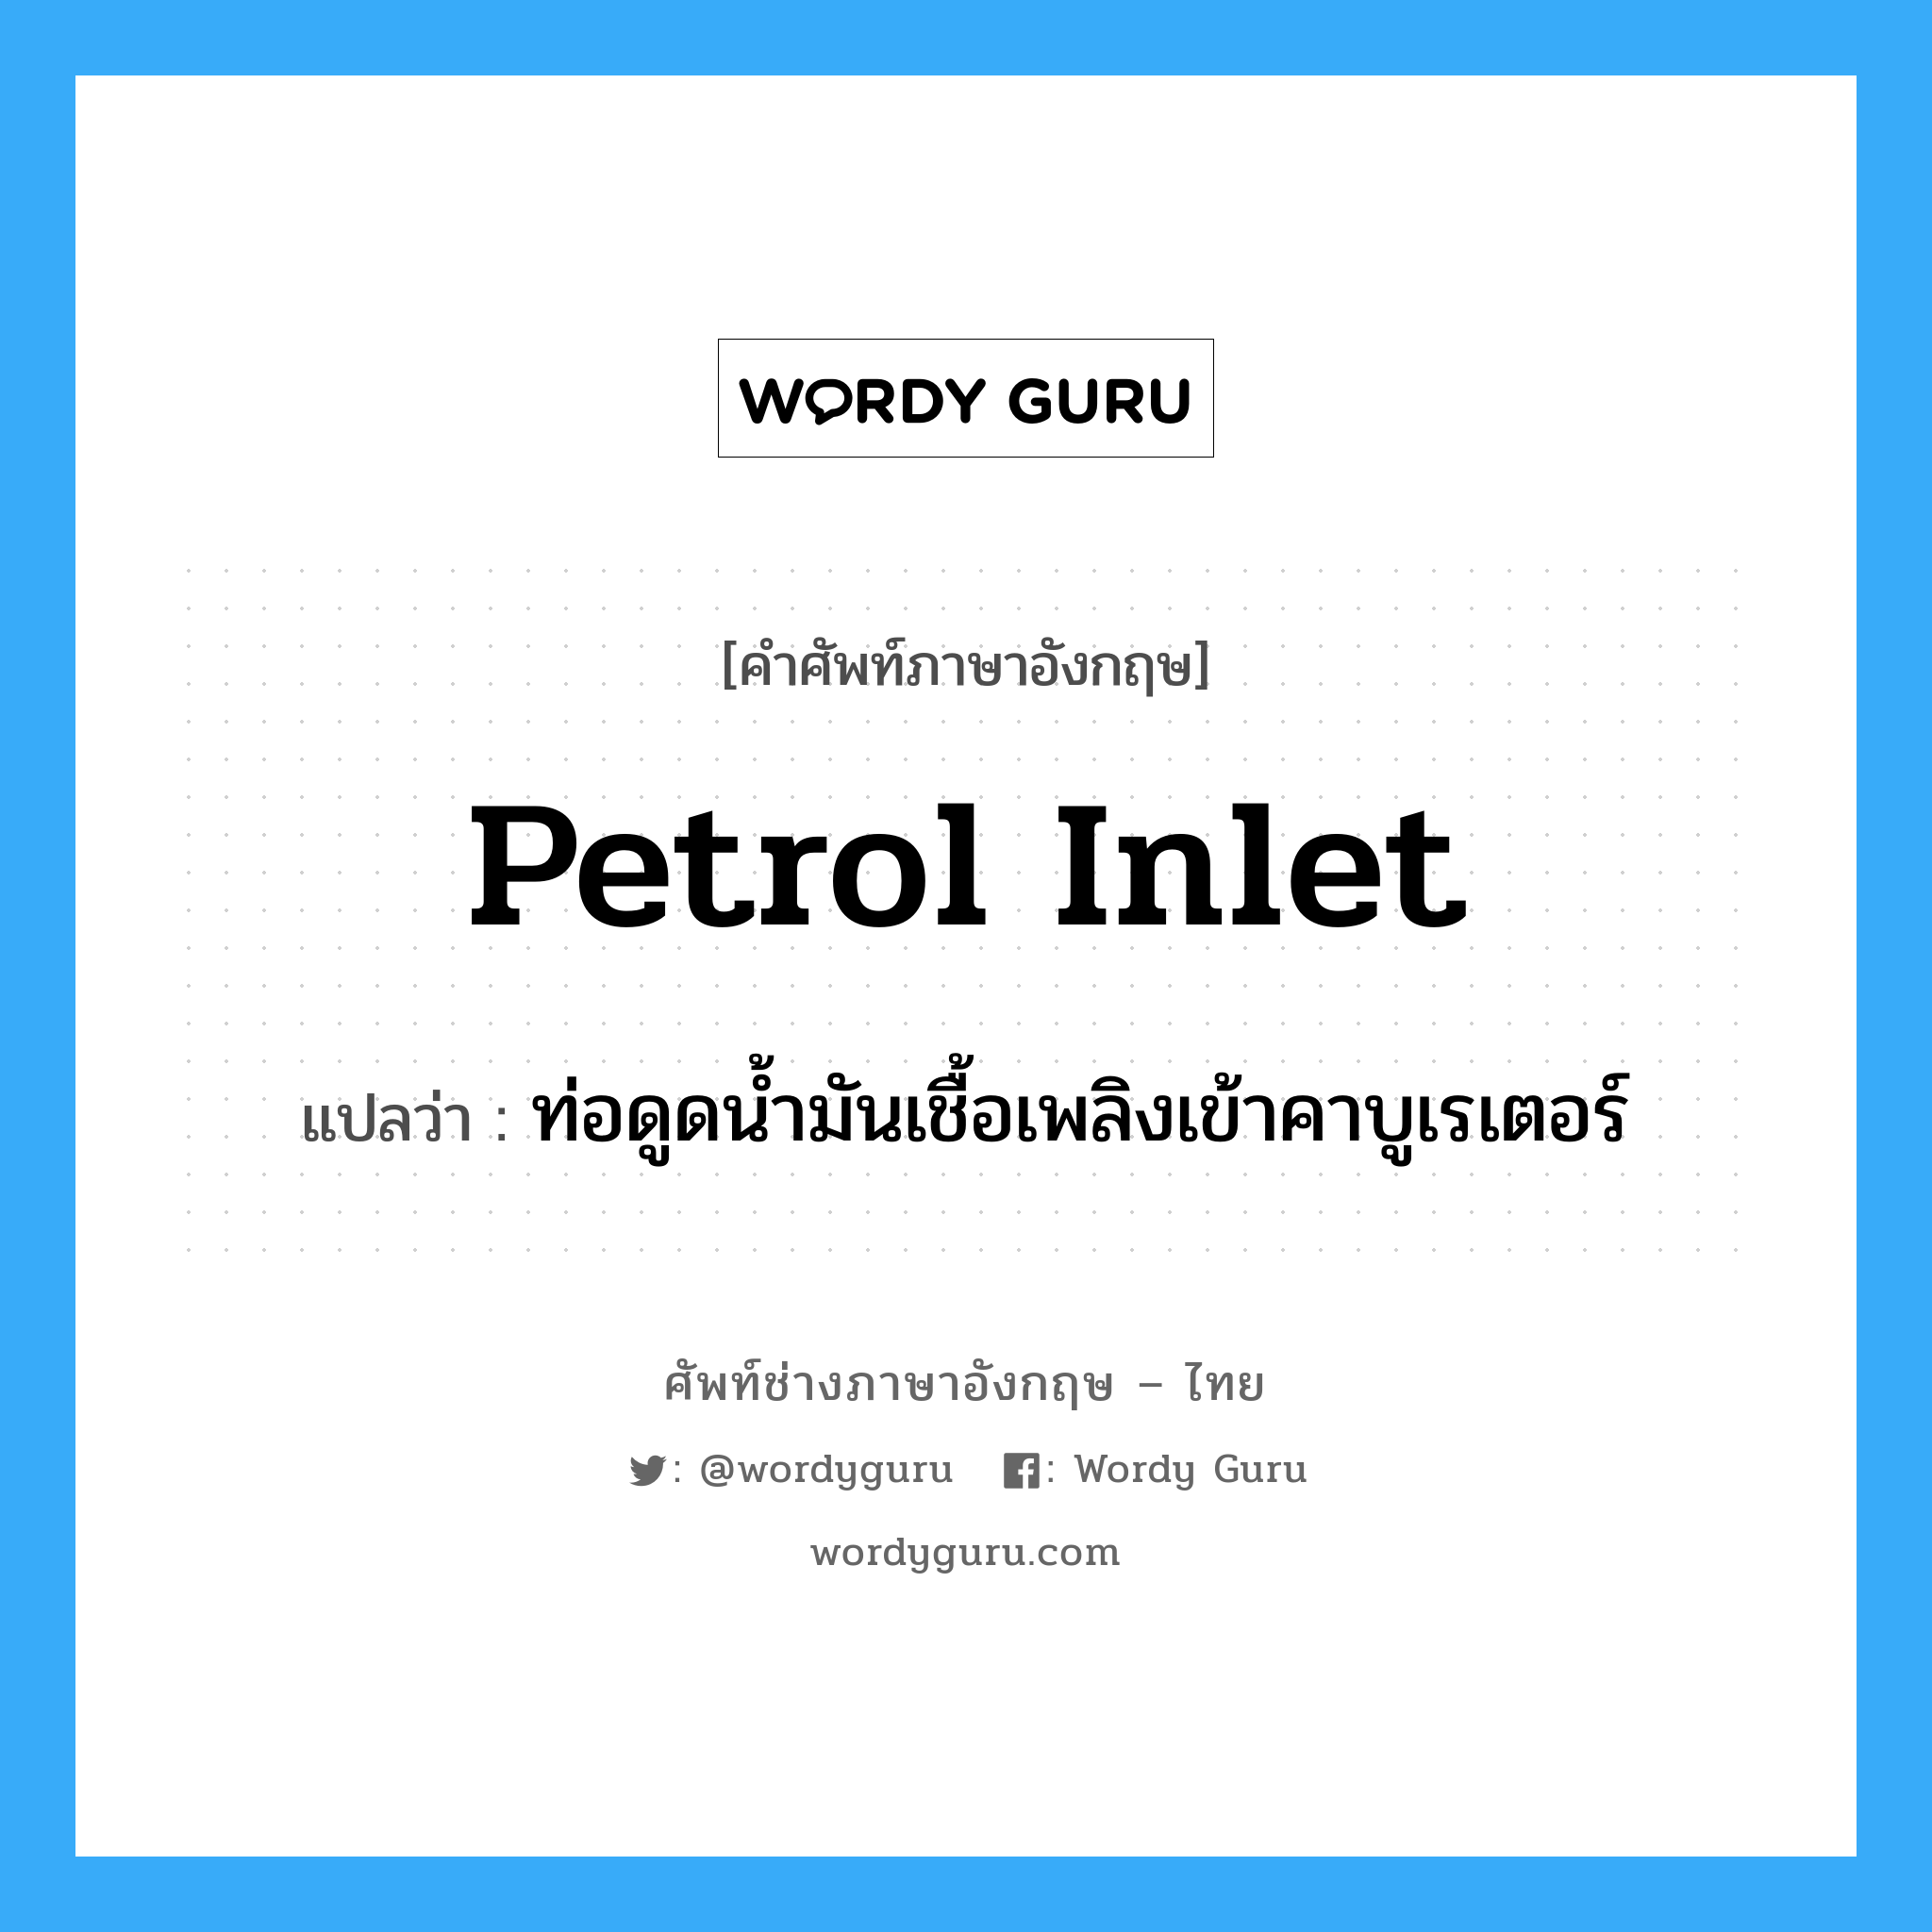 petrol inlet แปลว่า?, คำศัพท์ช่างภาษาอังกฤษ - ไทย petrol inlet คำศัพท์ภาษาอังกฤษ petrol inlet แปลว่า ท่อดูดน้ำมันเชื้อเพลิงเข้าคาบูเรเตอร์